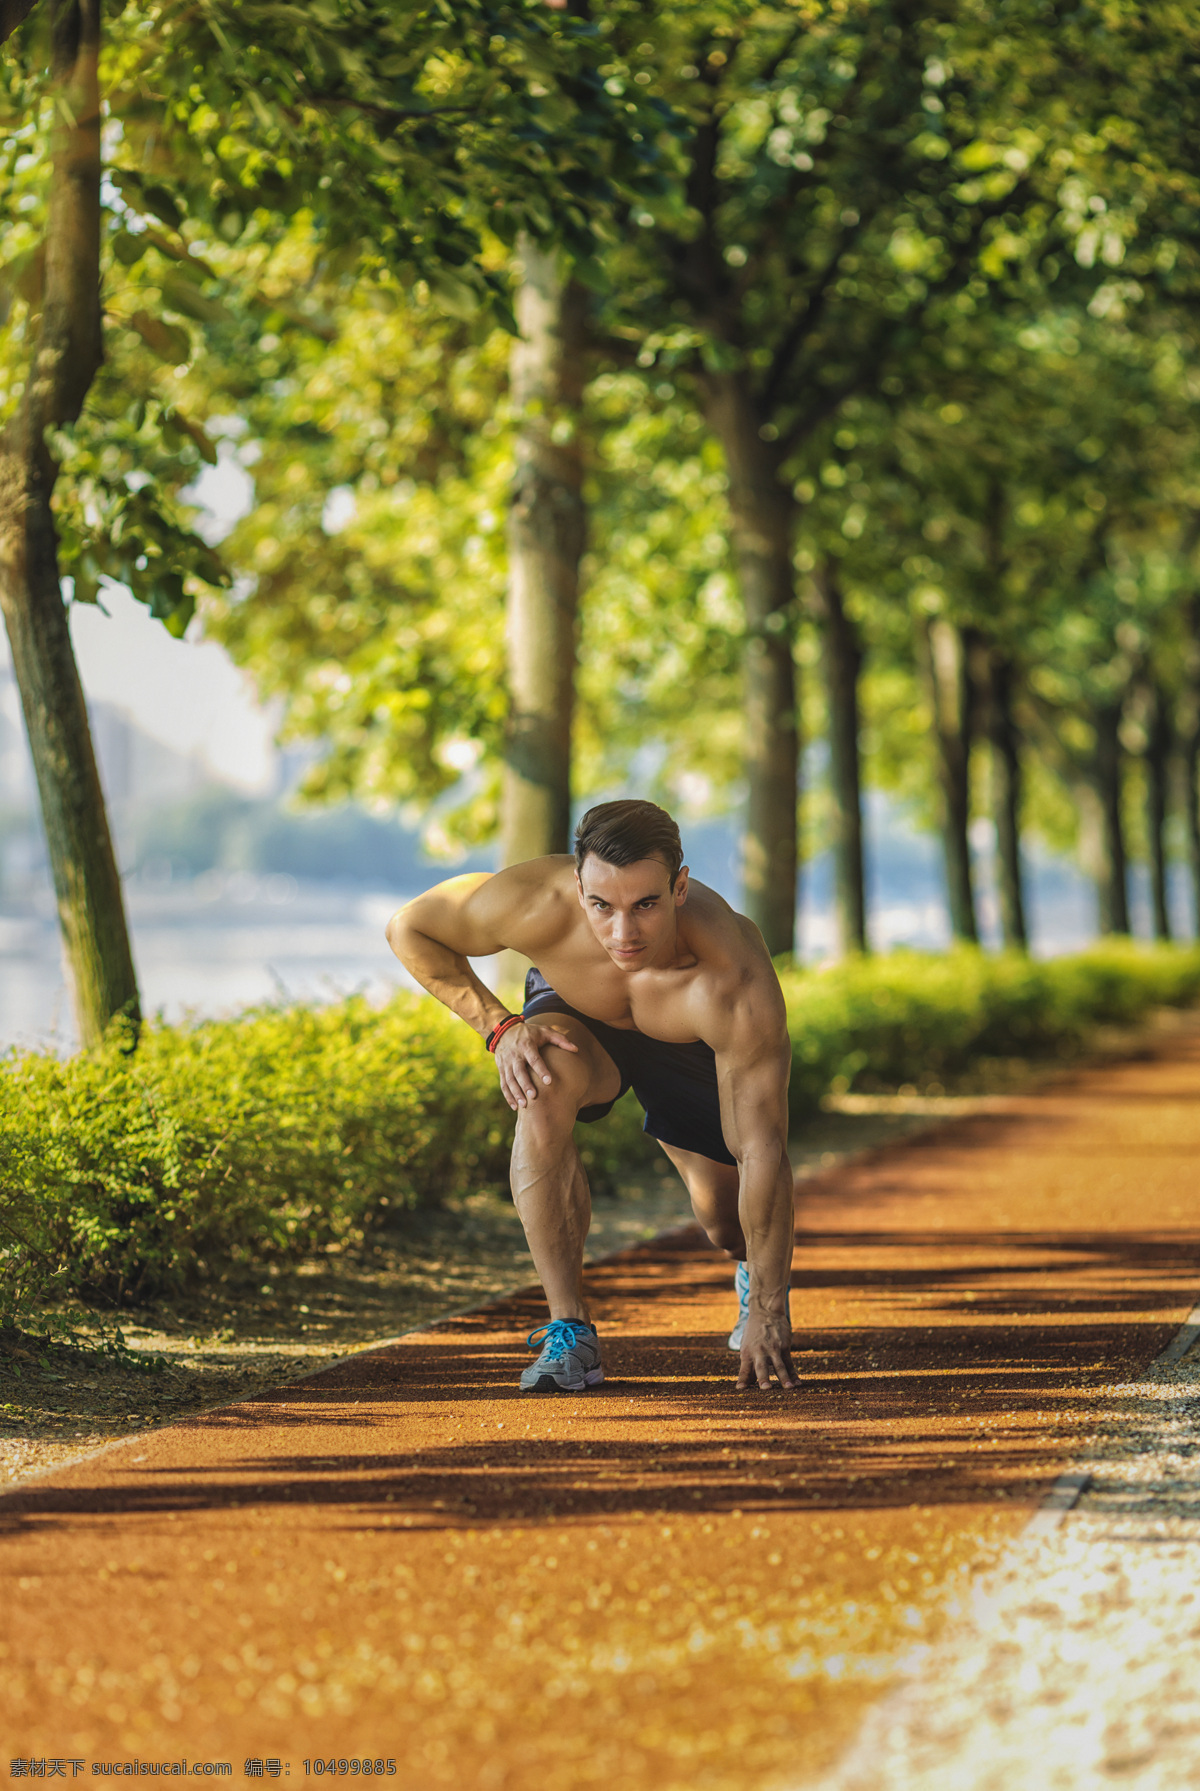 公园 跑步 肌肉 男人 锻炼健身 瘦身减肥 瘦身男人 外国男人 生活人物 人物图片